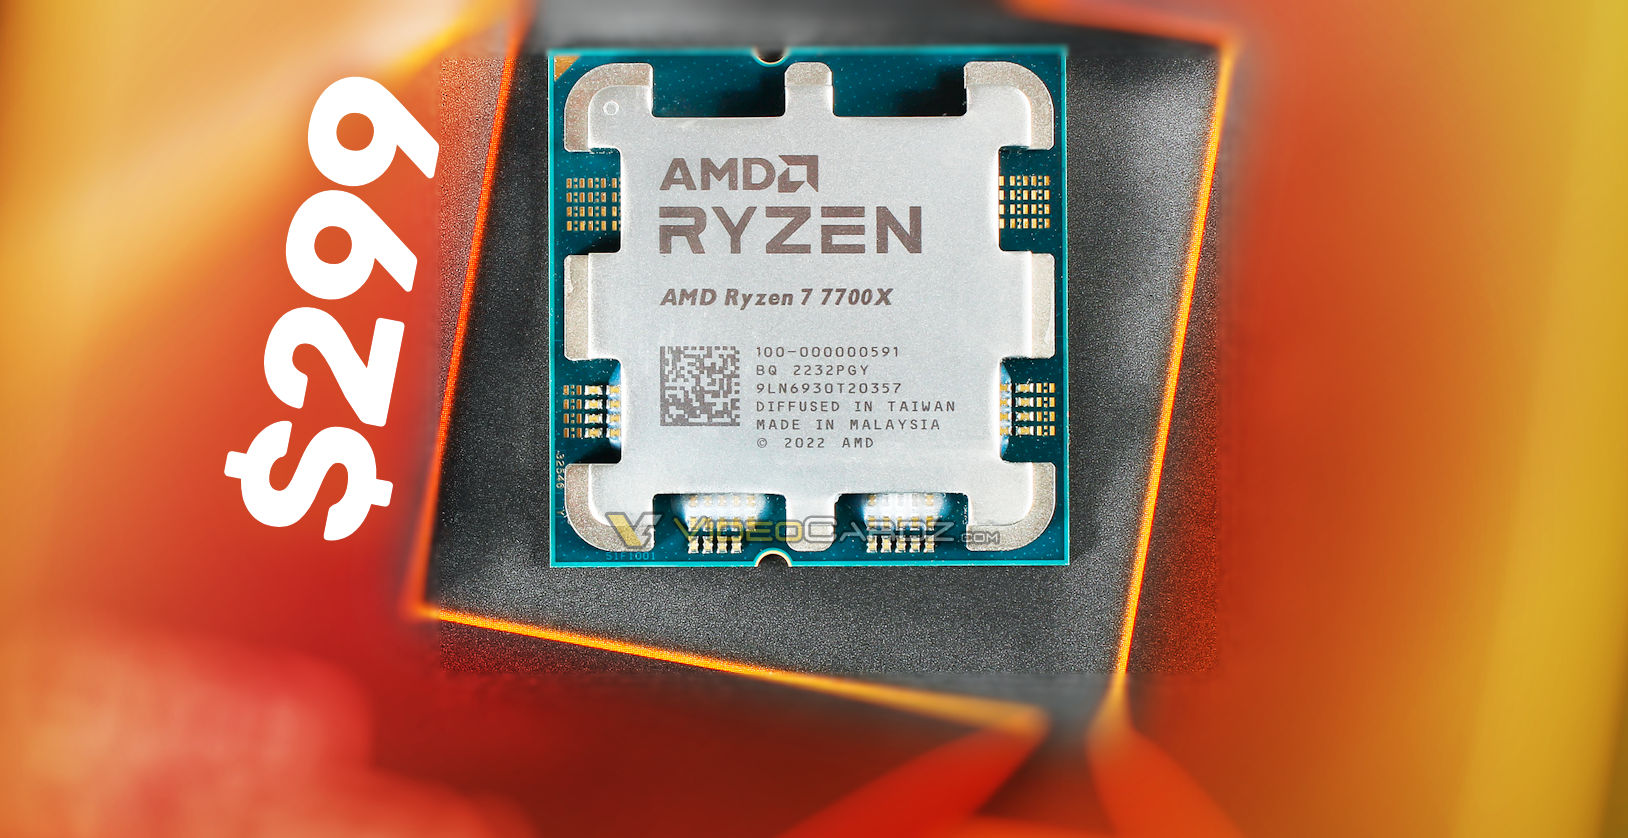 https://cdn.videocardz.com/1/2023/02/AMD-RYZEN-7700X-HERO.jpg